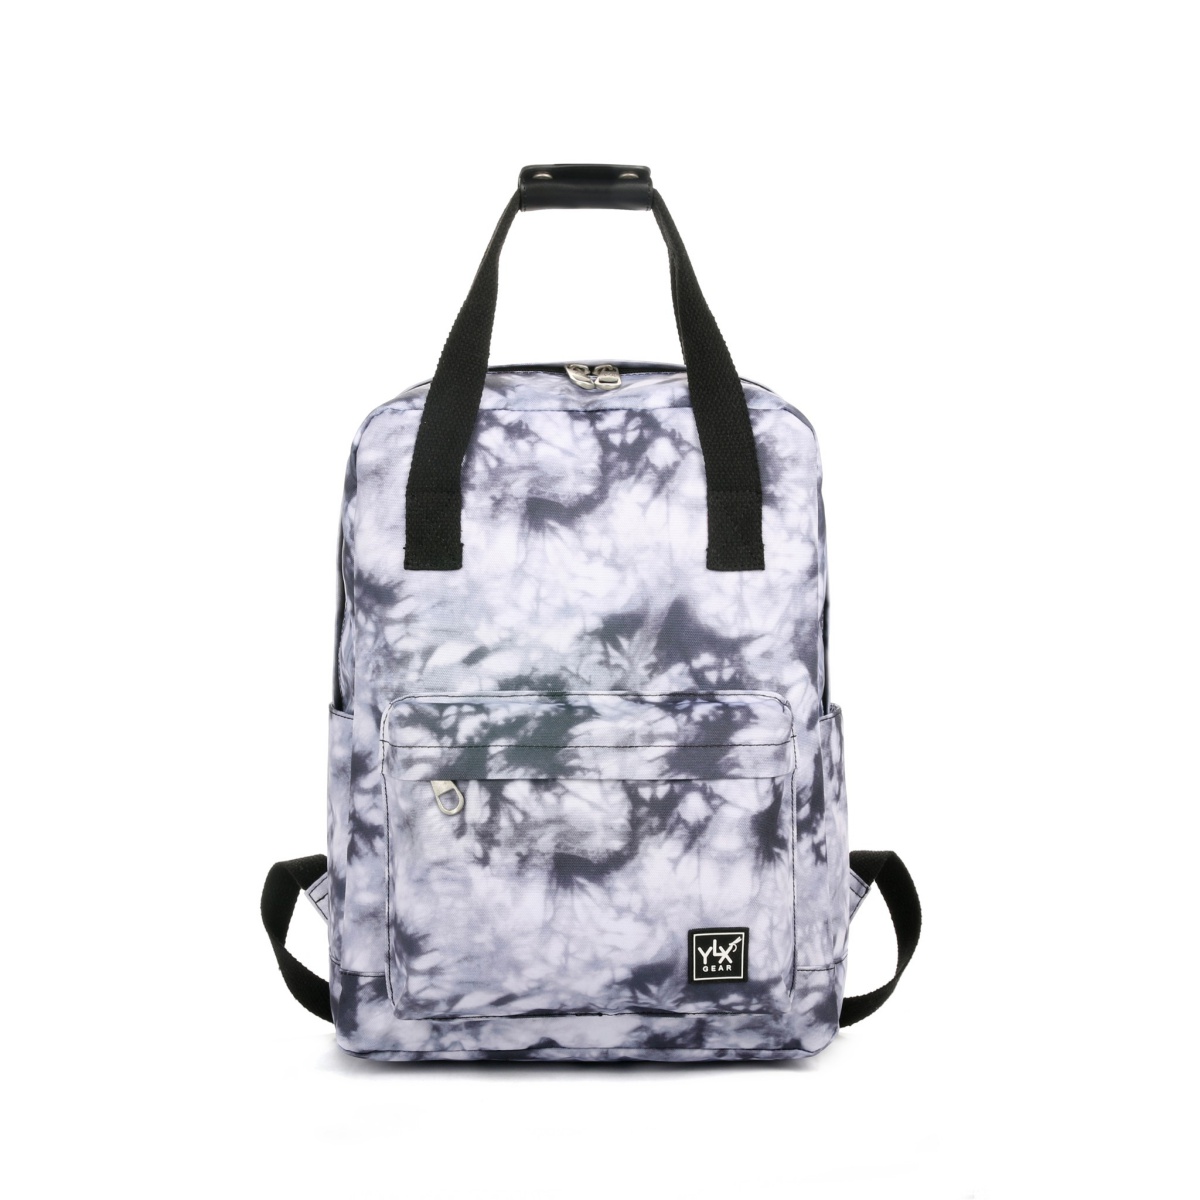 YLX Aspen Backpack